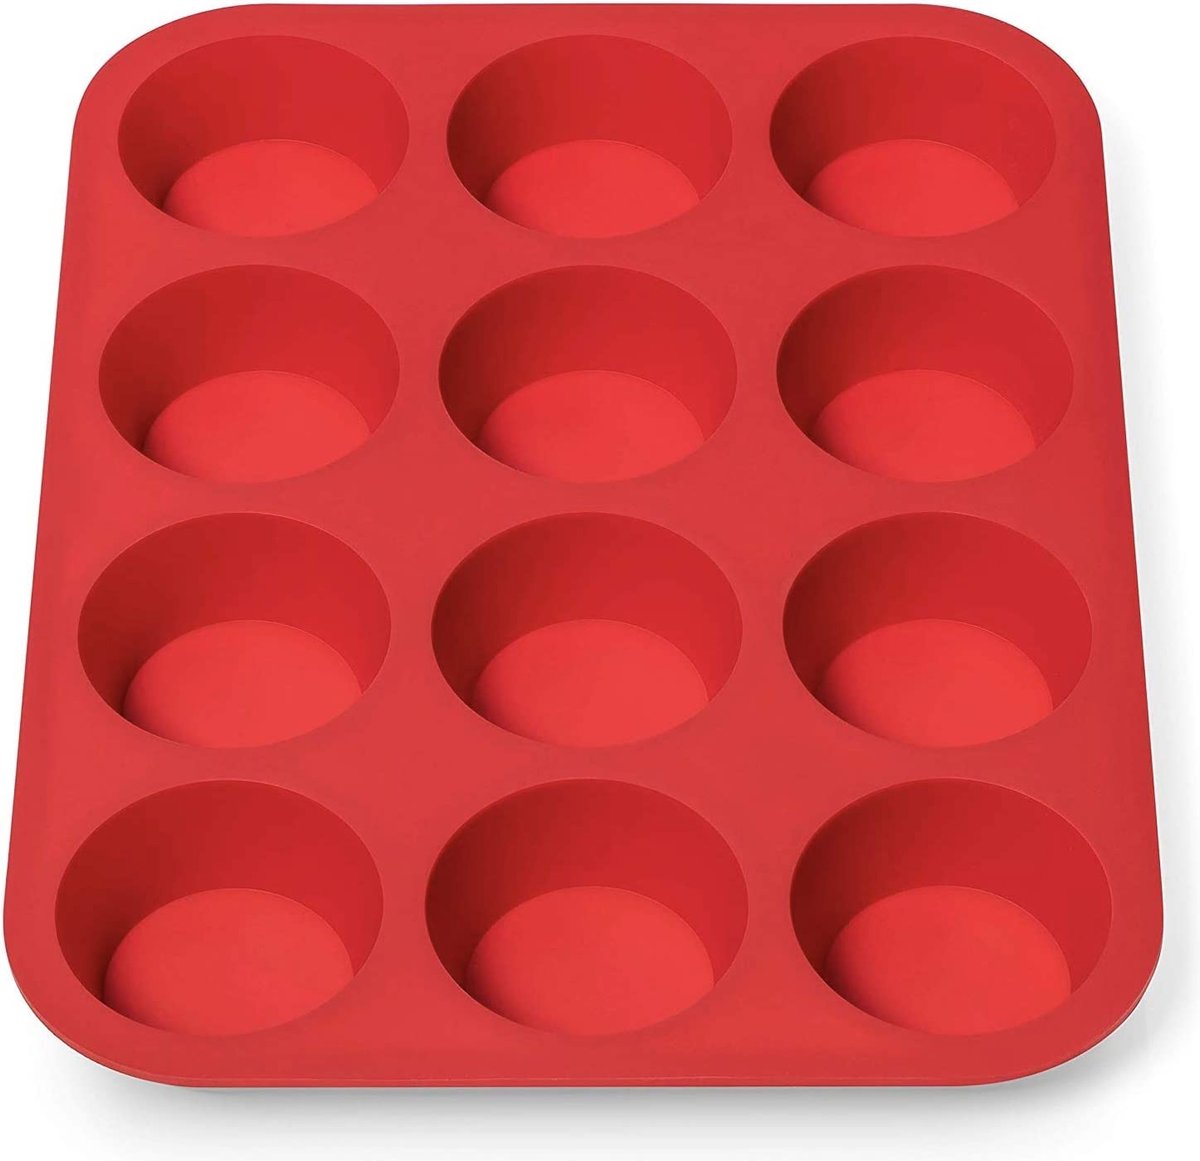 Muffinplaat van siliconen voor 12 muffins, BPA-vrij, anti-aanbaklaag, muffinvorm, cupcake, bakplaat, muffinvorm, brownies, bakvorm, muffinbakplaat, rood